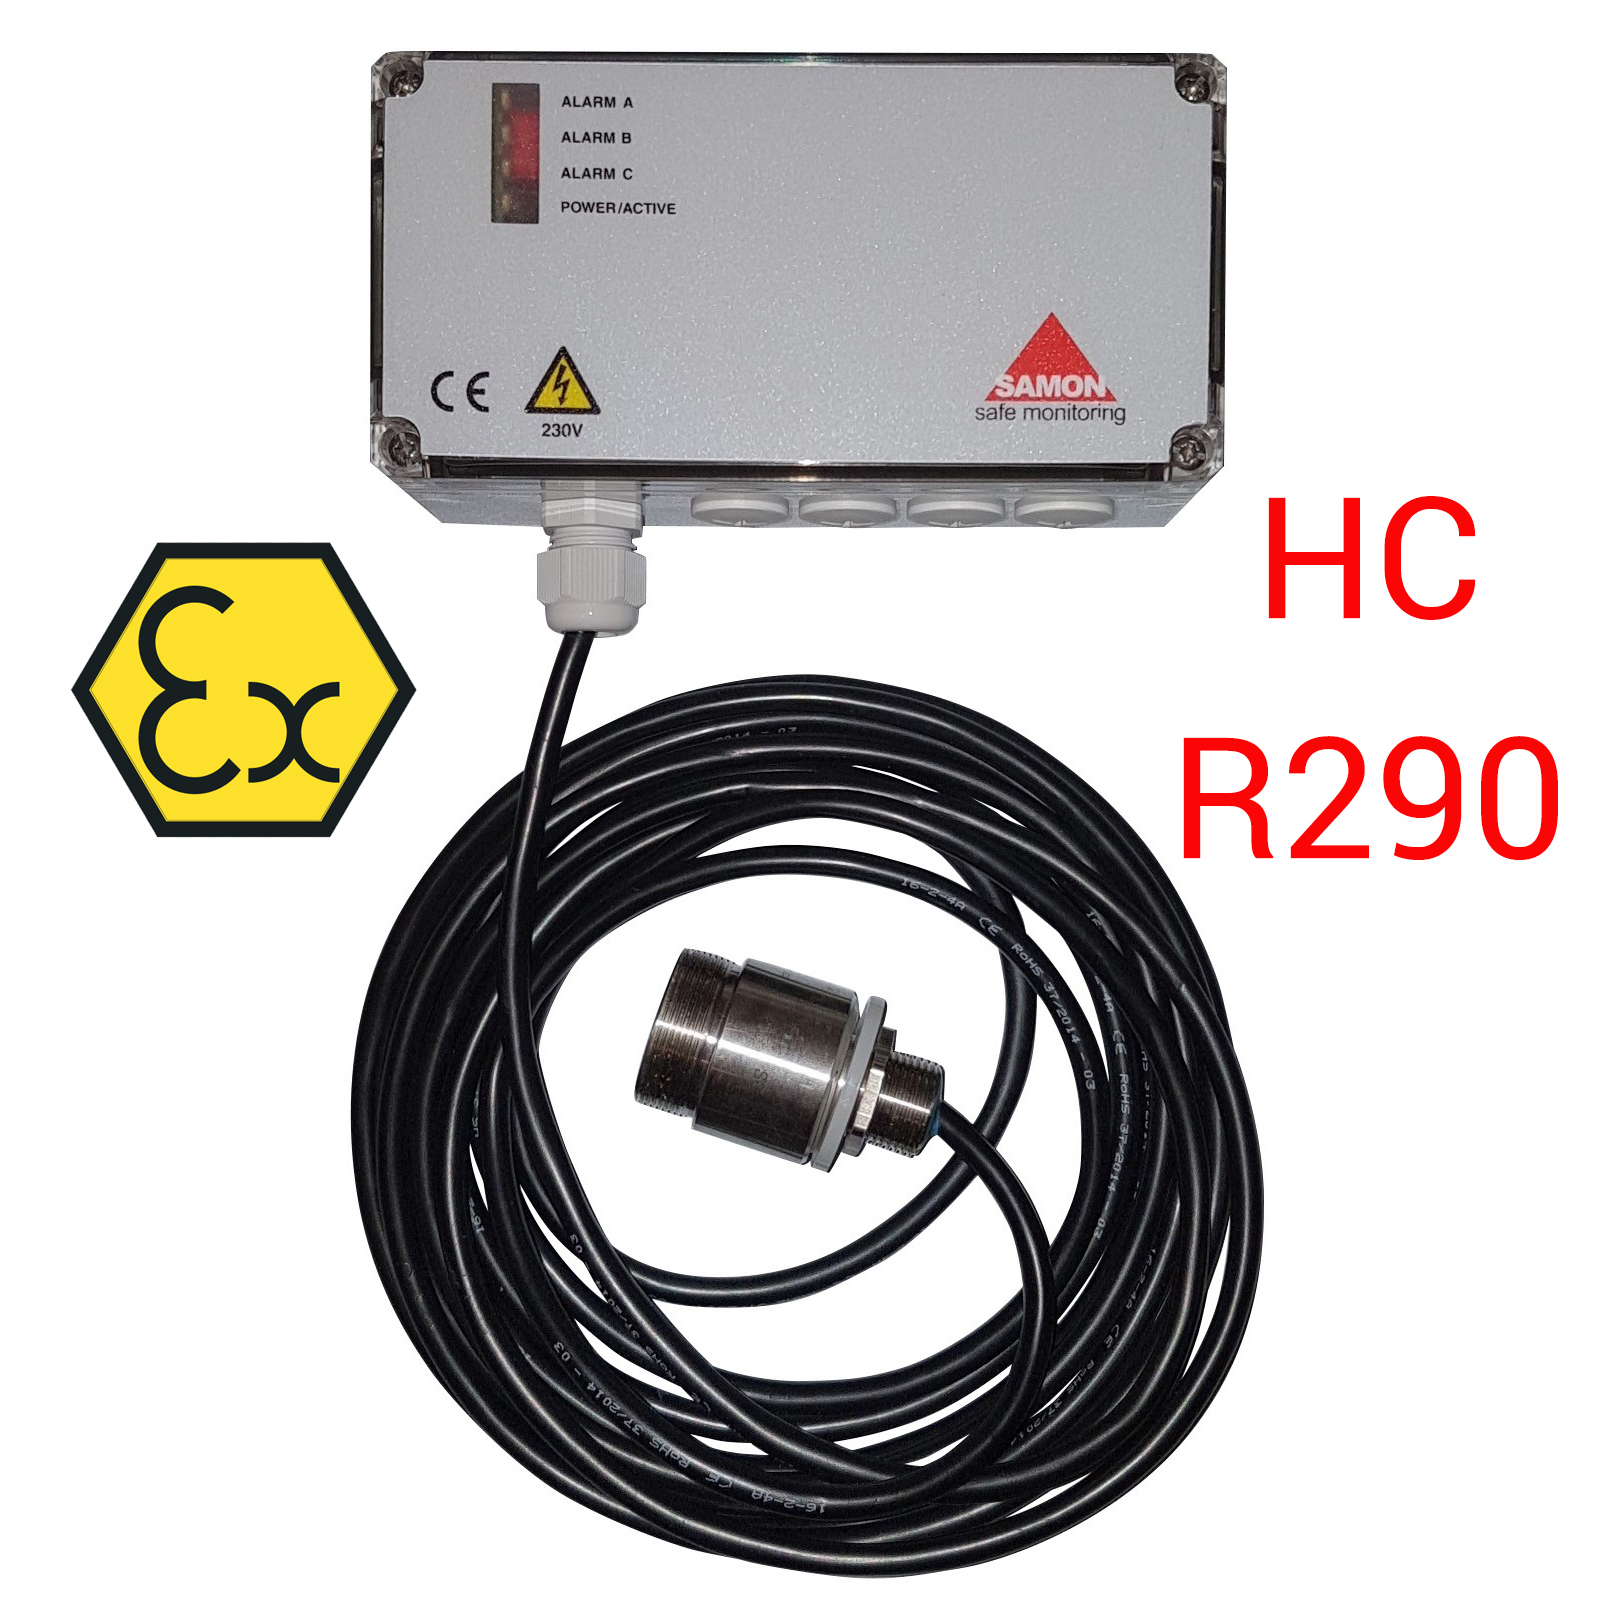 SAMON GXR230-HC: centralina ATEX di rilevazione con sensore remoto, per propano R290 e HC - unità con uscita relé e sensore a semiconduttore (SC) - Foto 1 